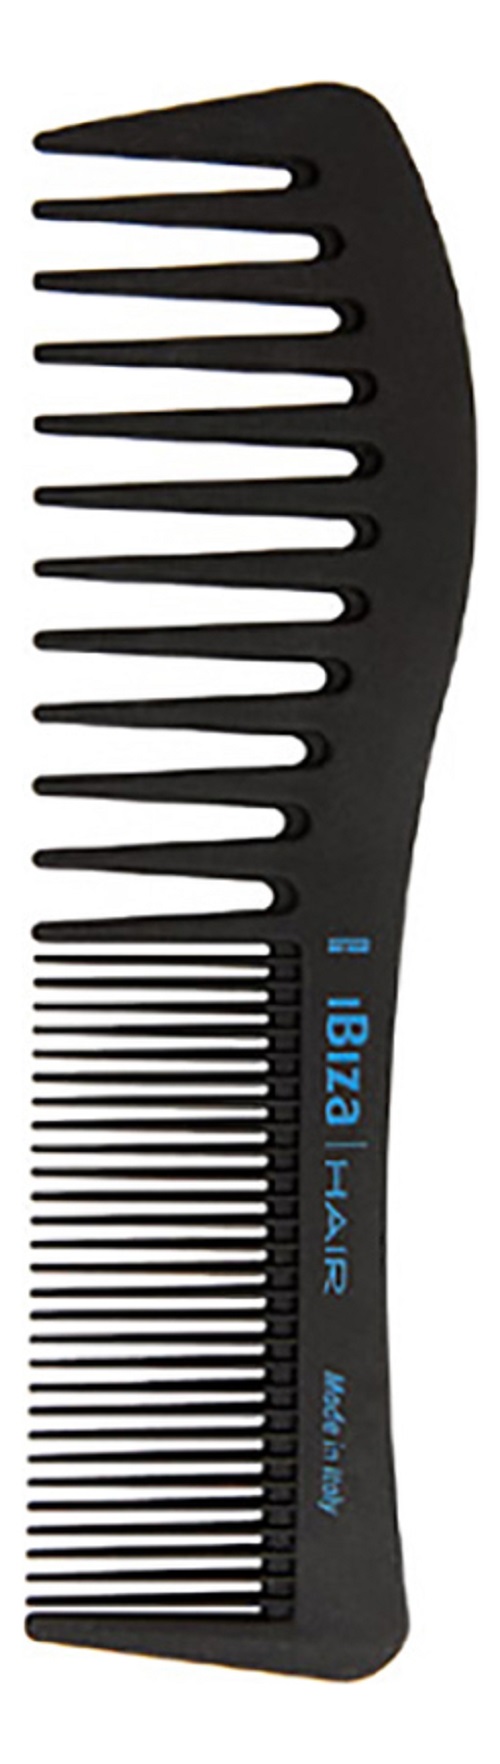 Карбоновая расческа для волос Ibiza Hair Carbon Comb Wave волнистая карбоновая расческа для волос ibiza hair carbon comb wave волнистая